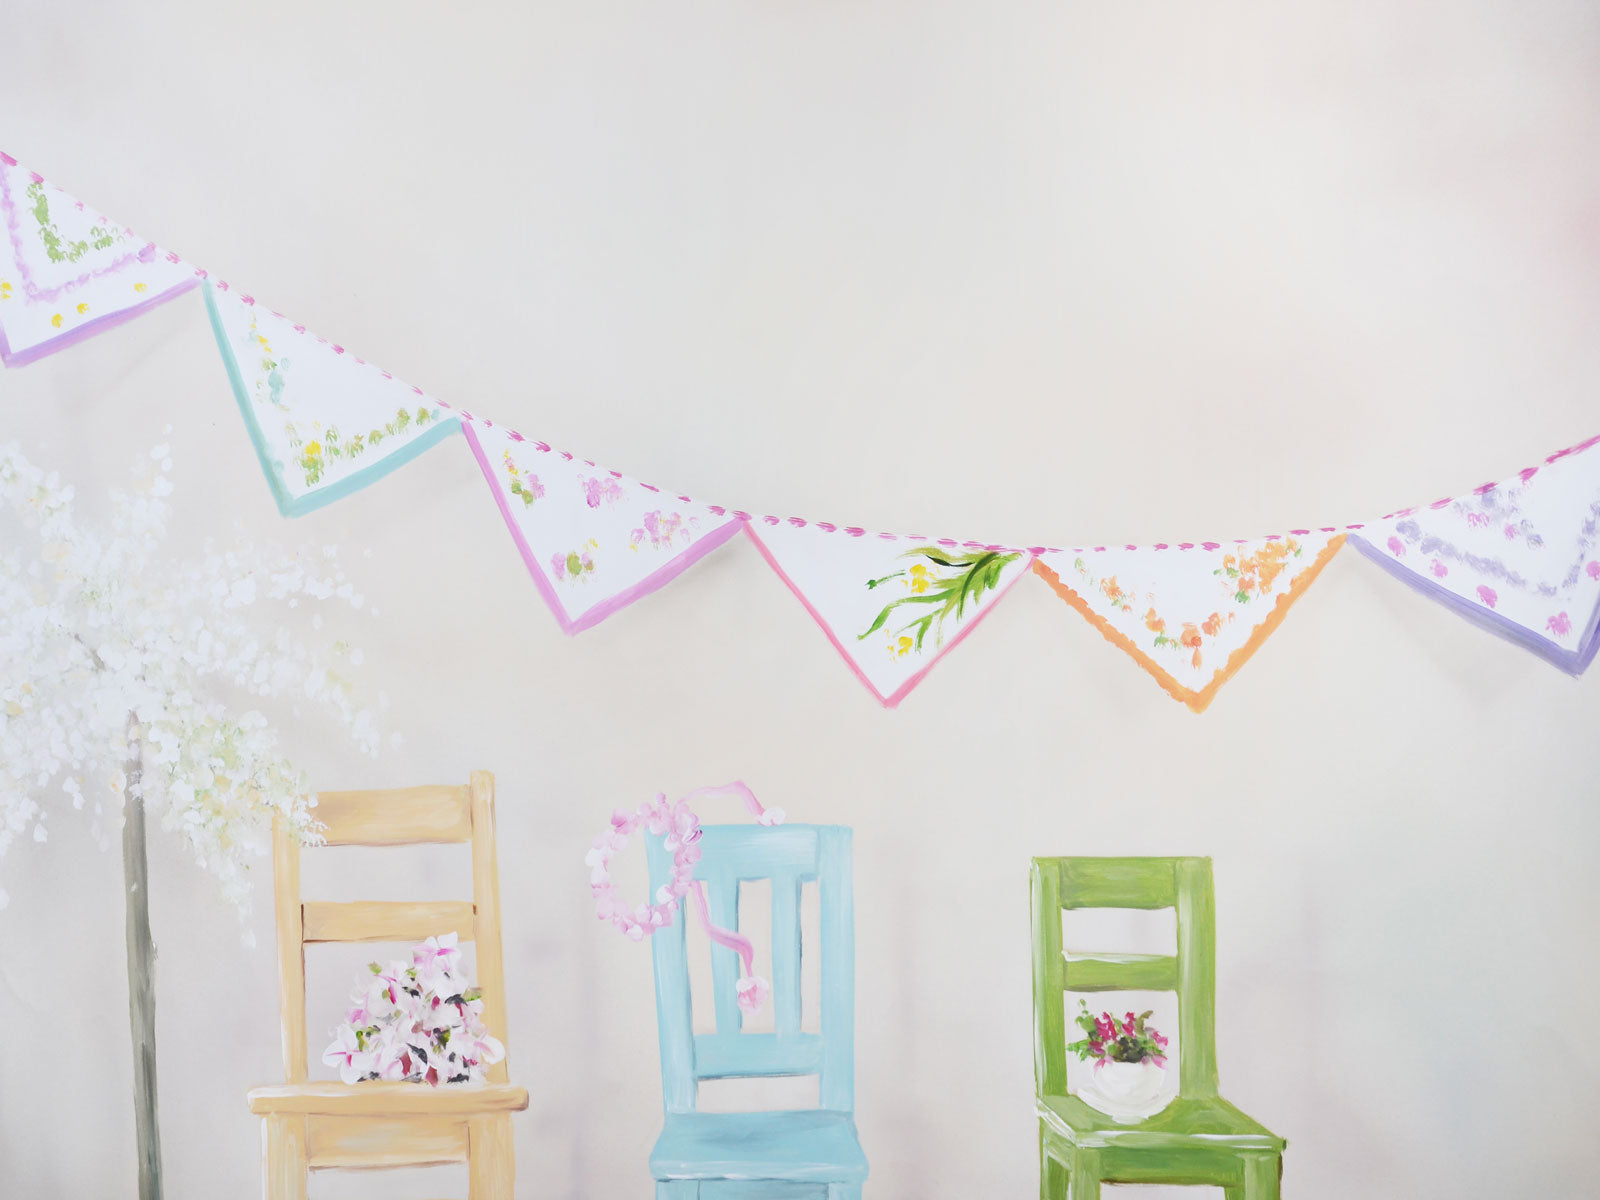 Kate Stühle und weißer Wand-Kinderhintergrund entworfen von Jerry_Sina